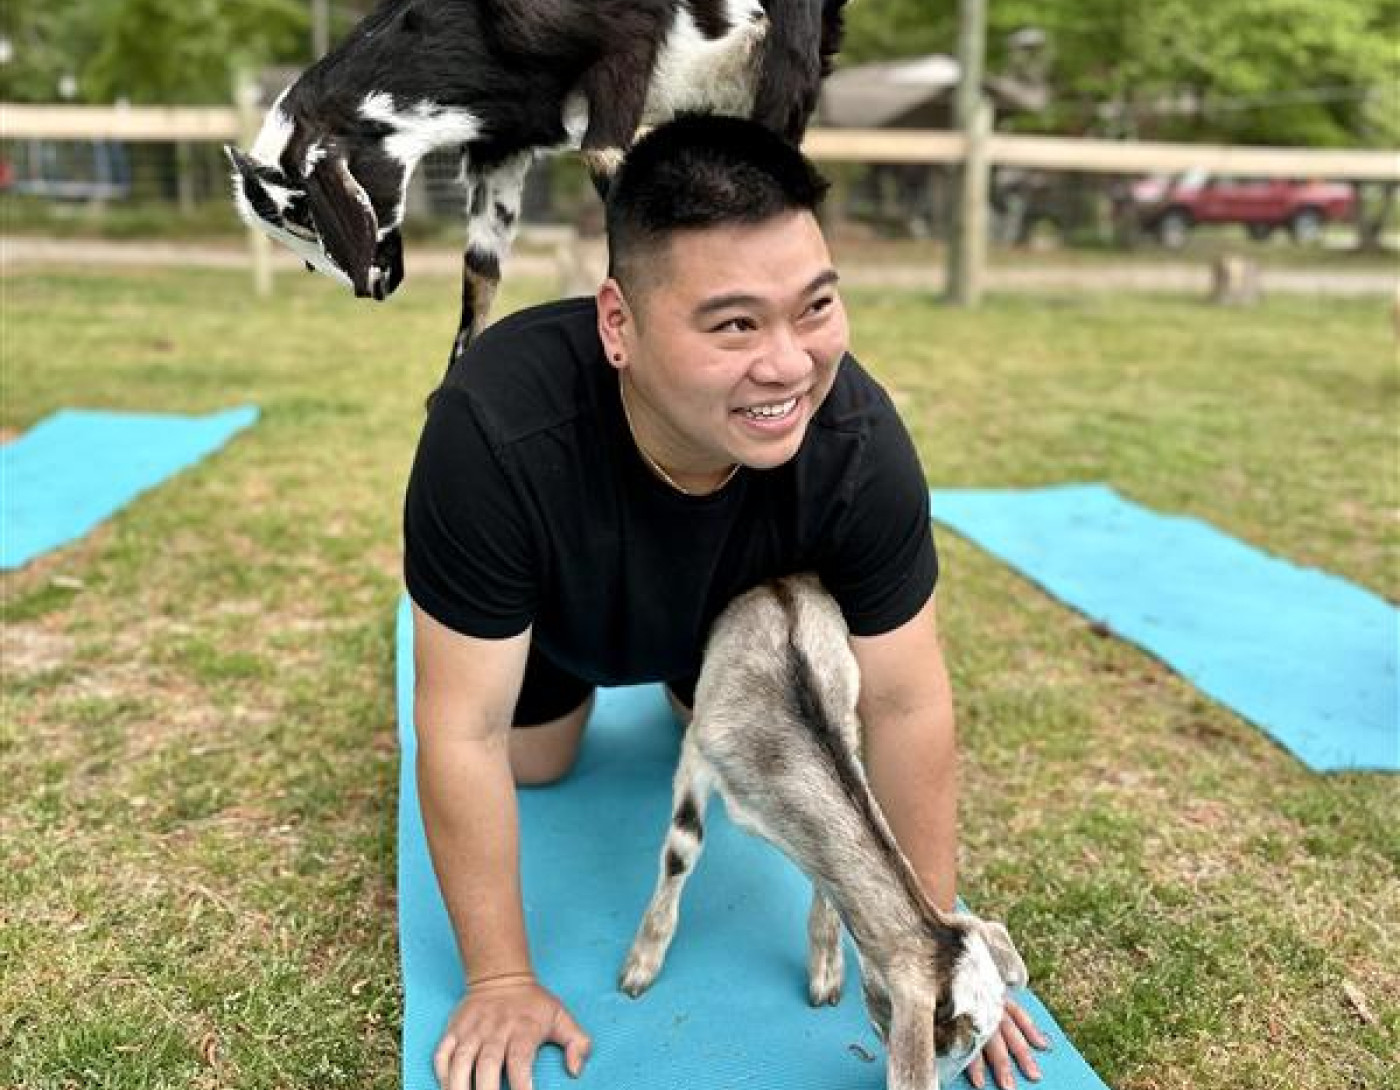 Flad Architects employee goat yoga group activity